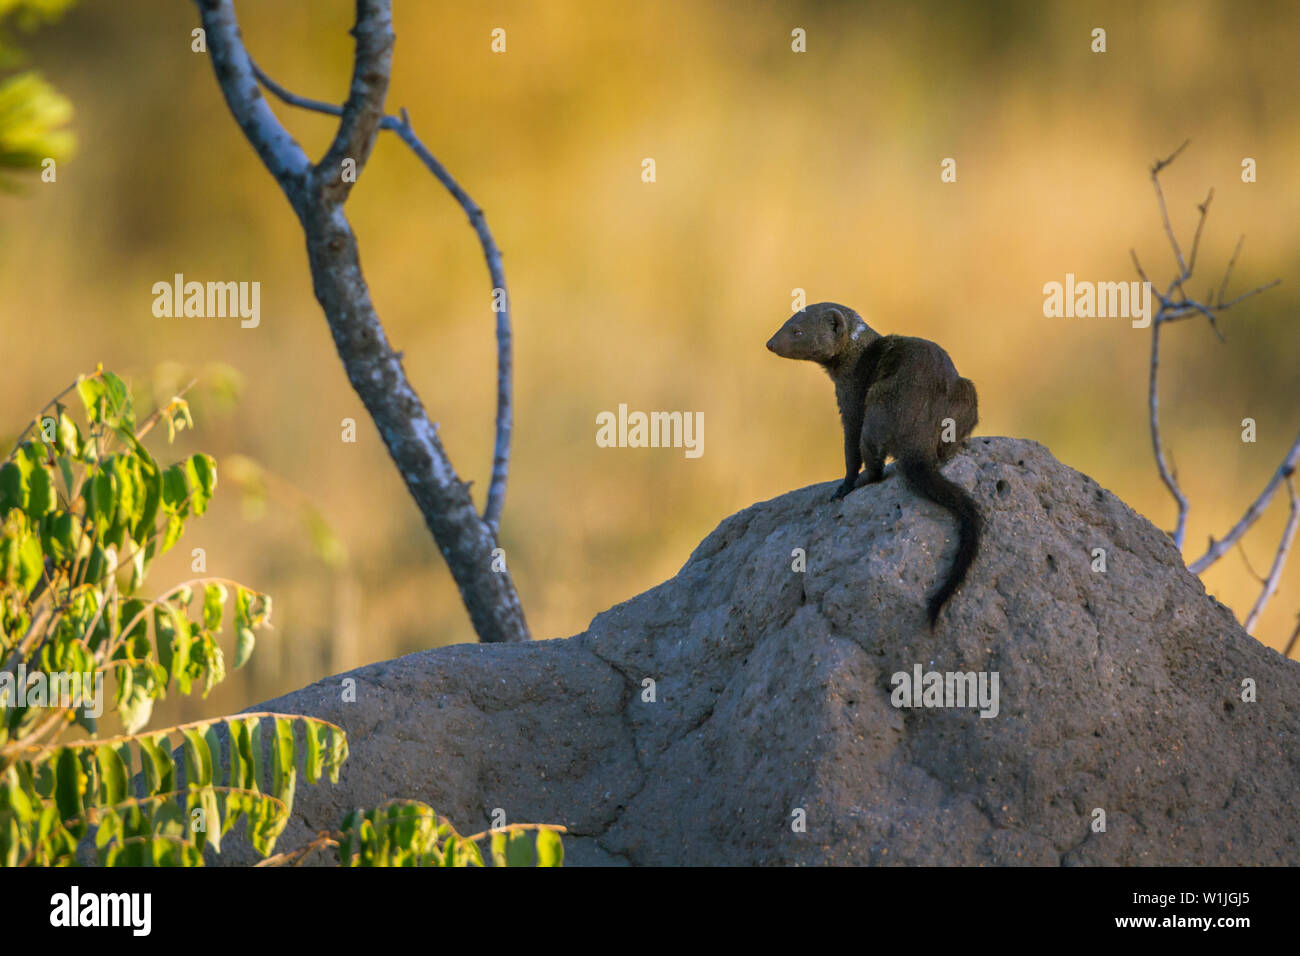 Comune la mangusta nana sul tumulo termite nel Parco Nazionale di Kruger, Sud Africa ; Specie Helogale parvula famiglia dei Herpestidae Foto Stock